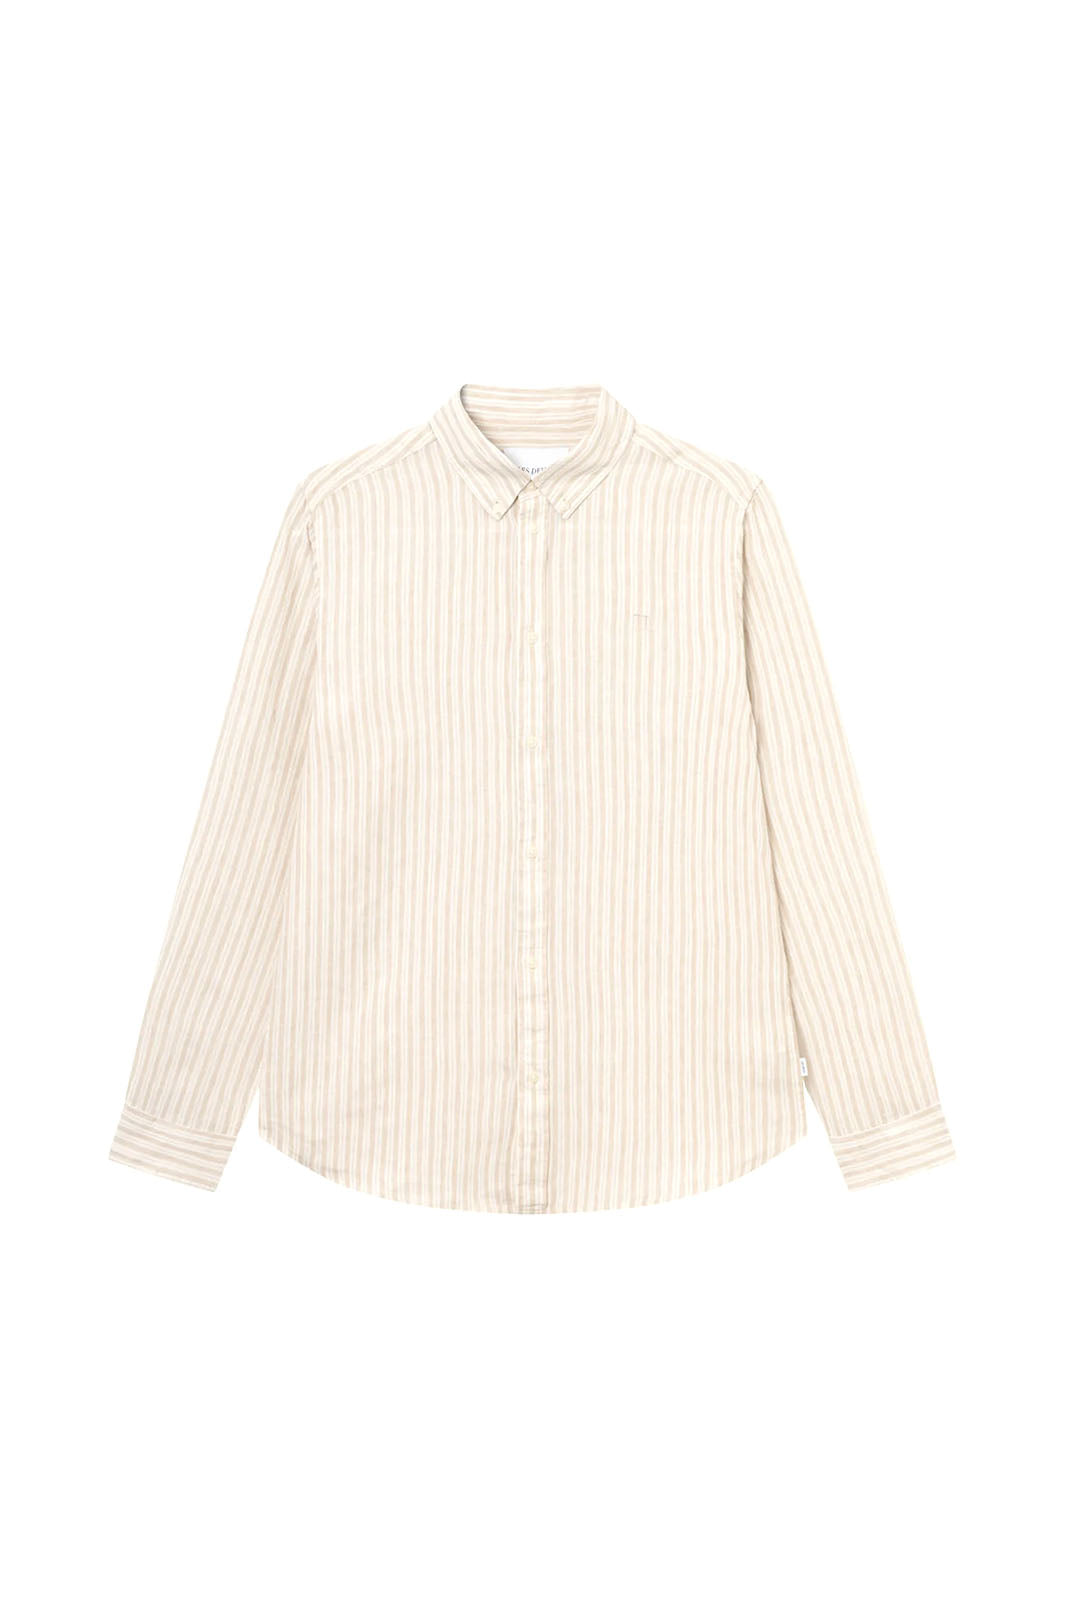 Kristian Linen Button-Up Shirt - Light Desert Sand/ Ivory